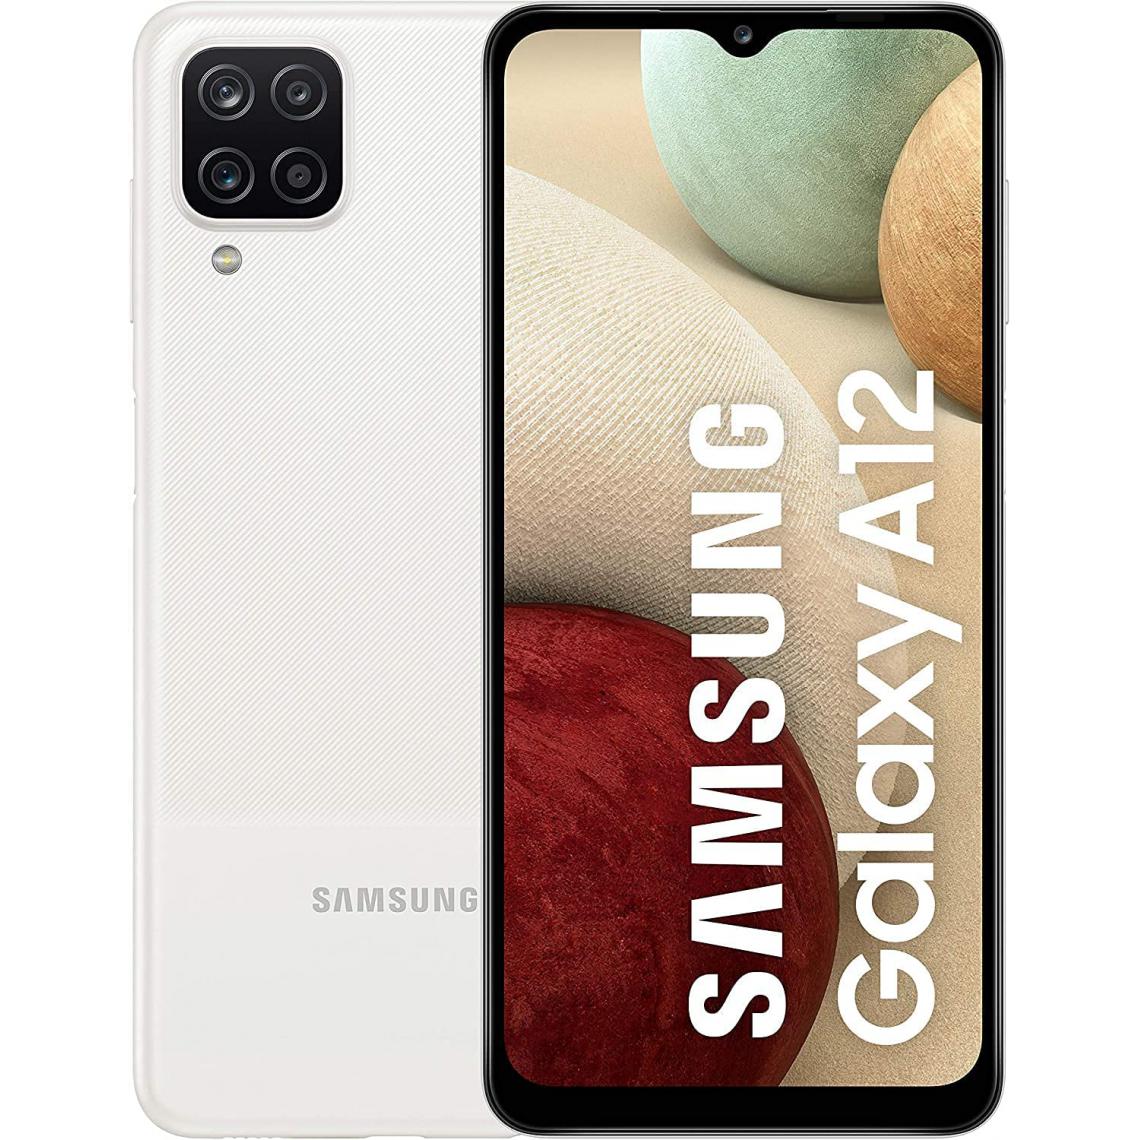 Samsung - SAMSUNG Galaxy A12 64GB (4GB RAM) Blanc A125F-DS - Smartphone Android